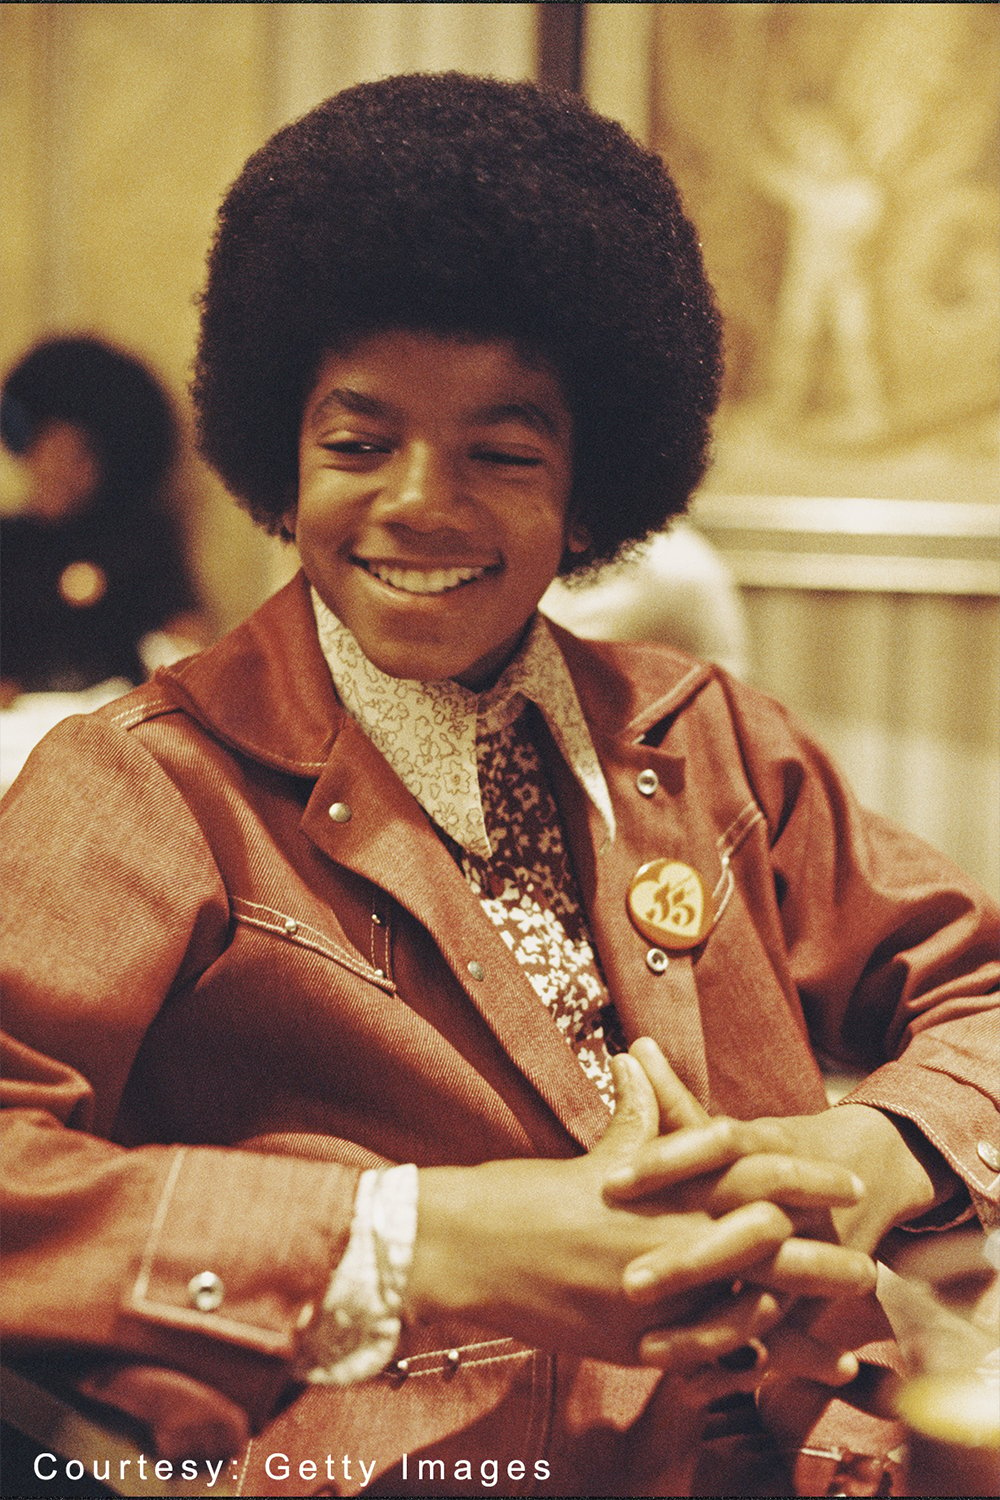 Michael Jackson in London, U.K., in November 1972